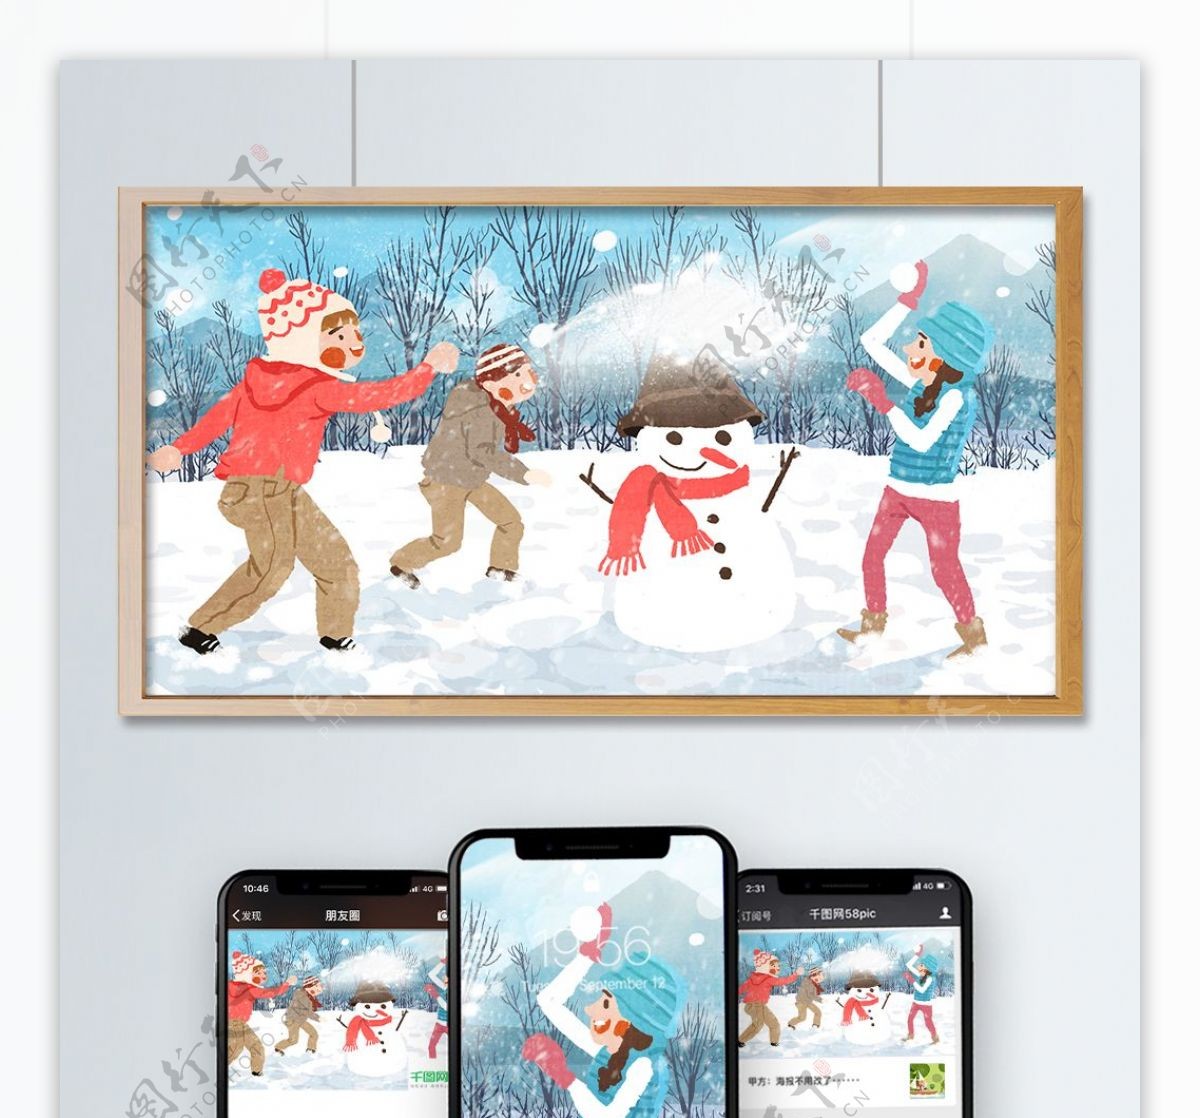 冬季最开心和小伙伴一起打雪仗原创手绘插画